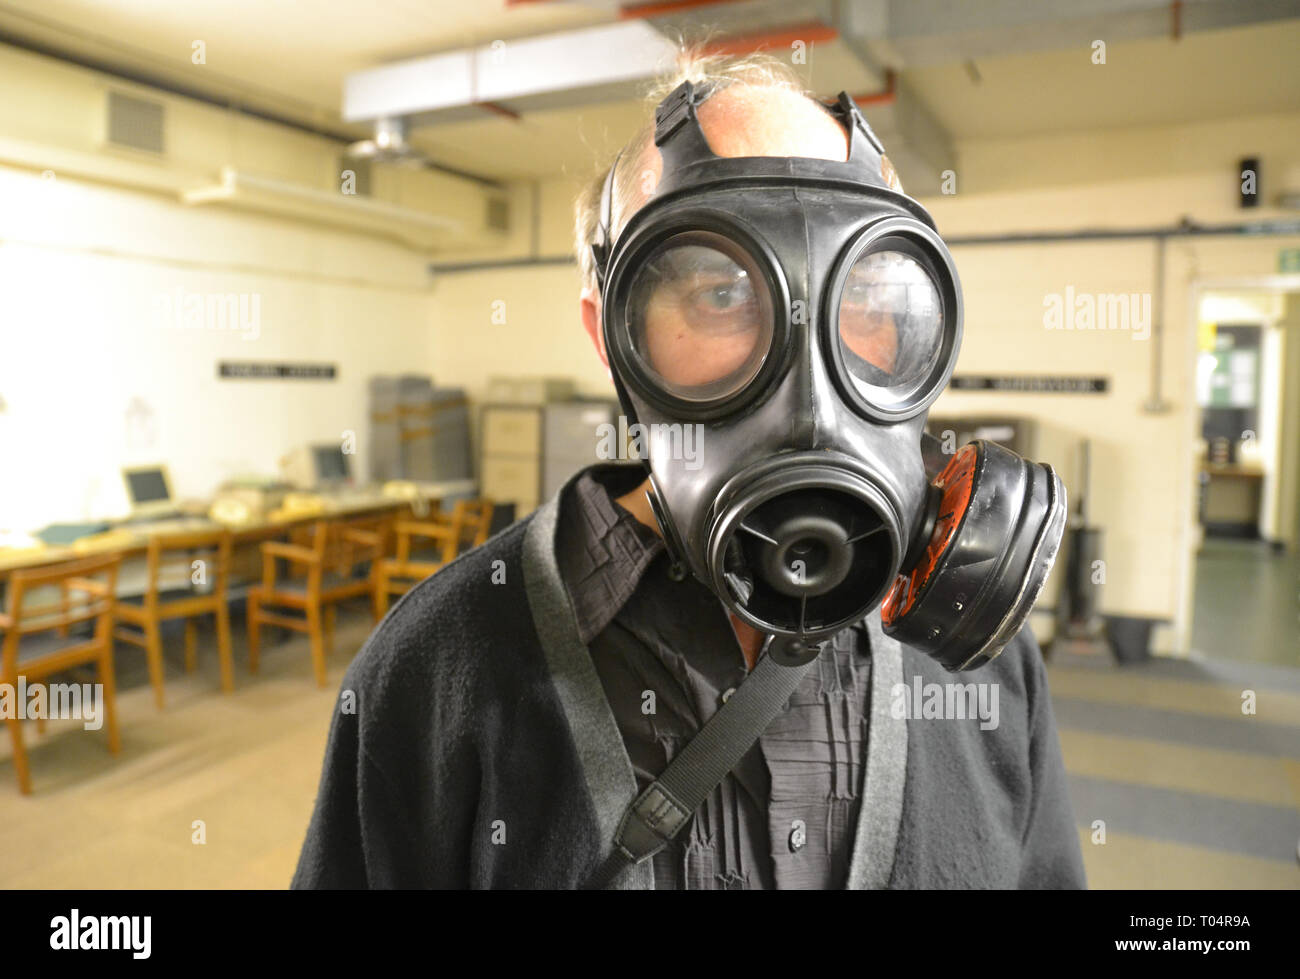 Mann in der Gasmaske im Kelvedon Hatch Secret Nuclear Bunker, Brentwood, Essex, Großbritannien Stockfoto